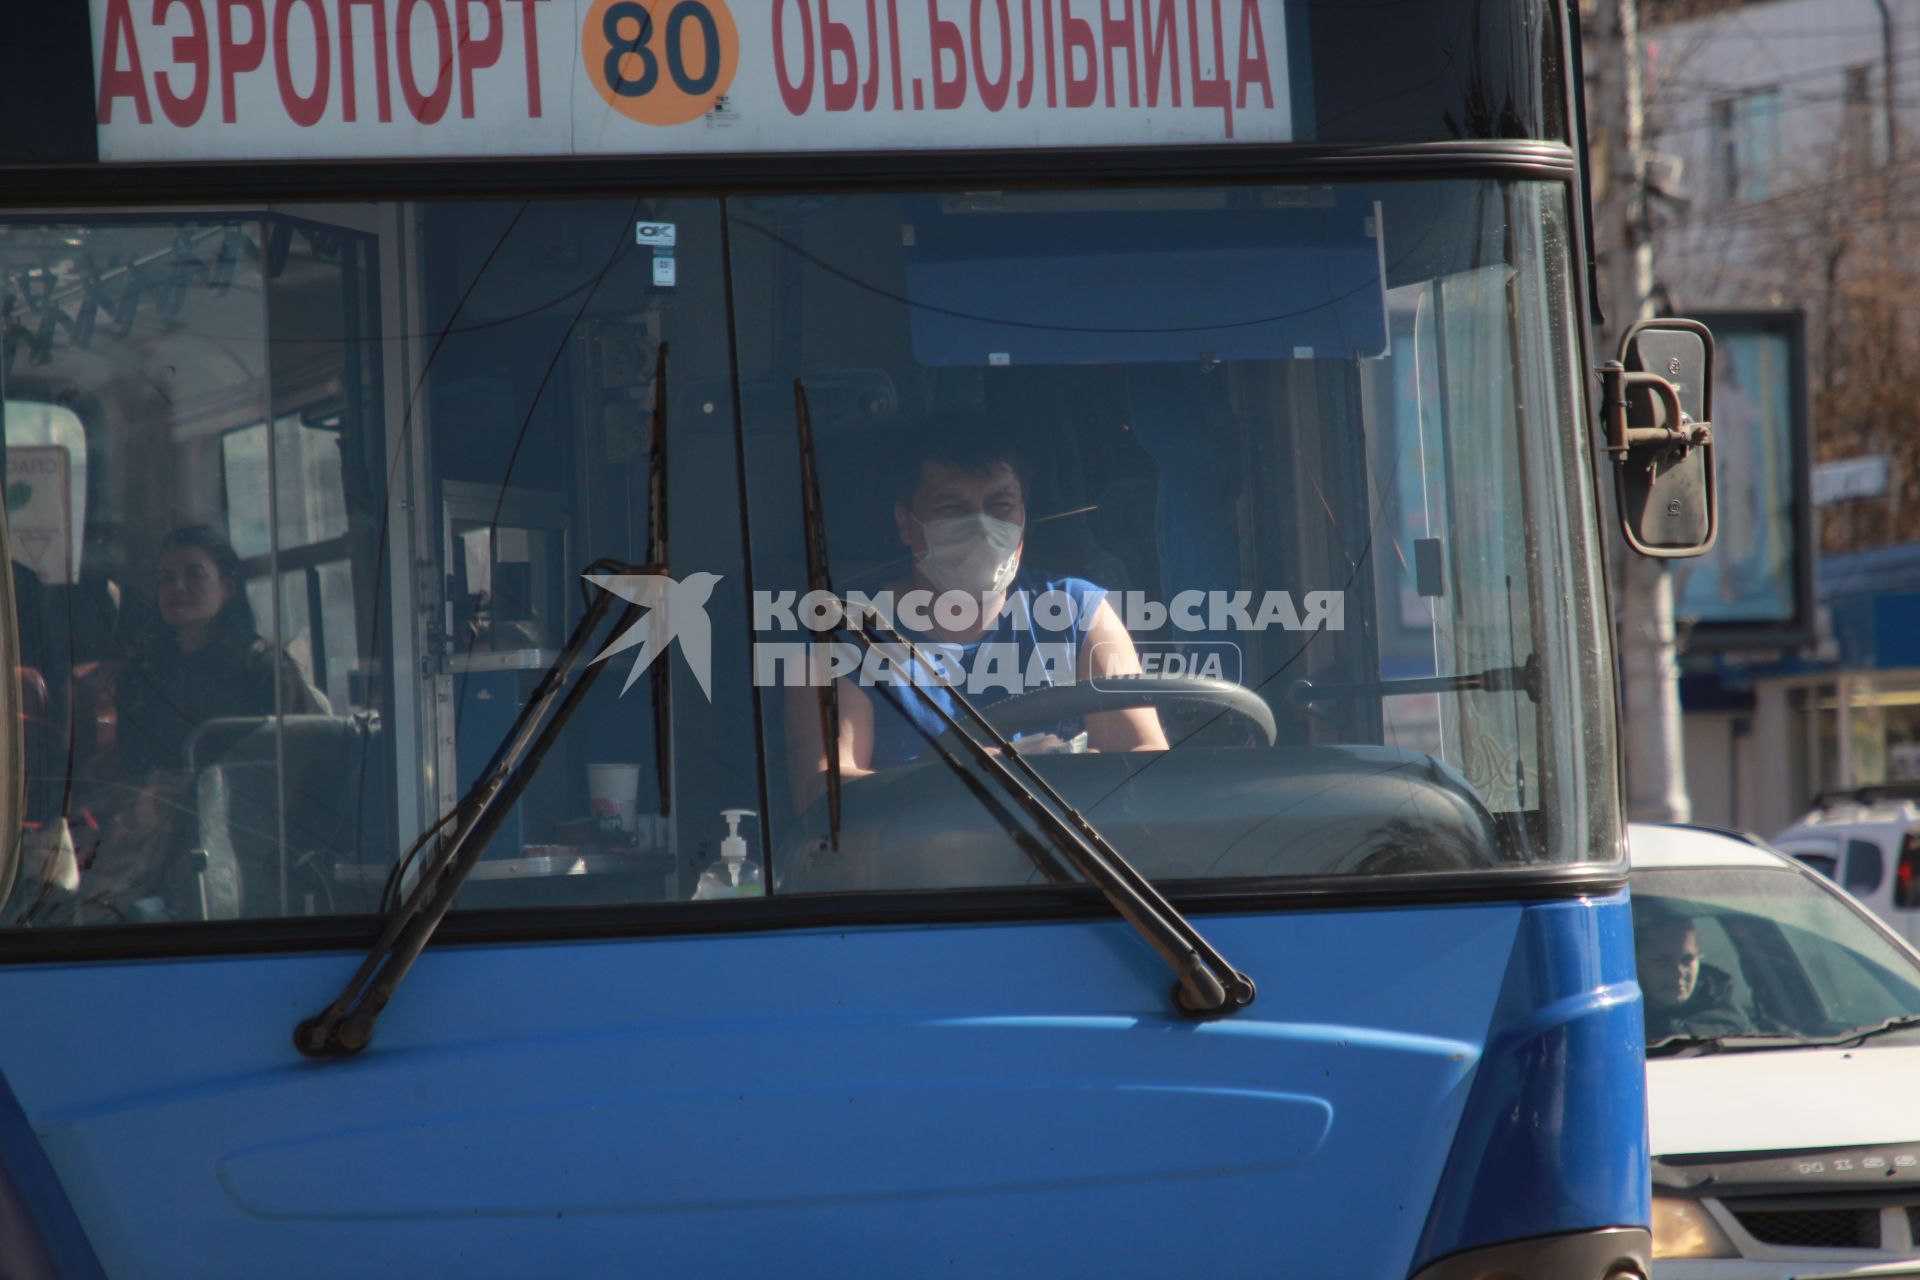 Иркутск. Водитель автобуса в медицинской маске.